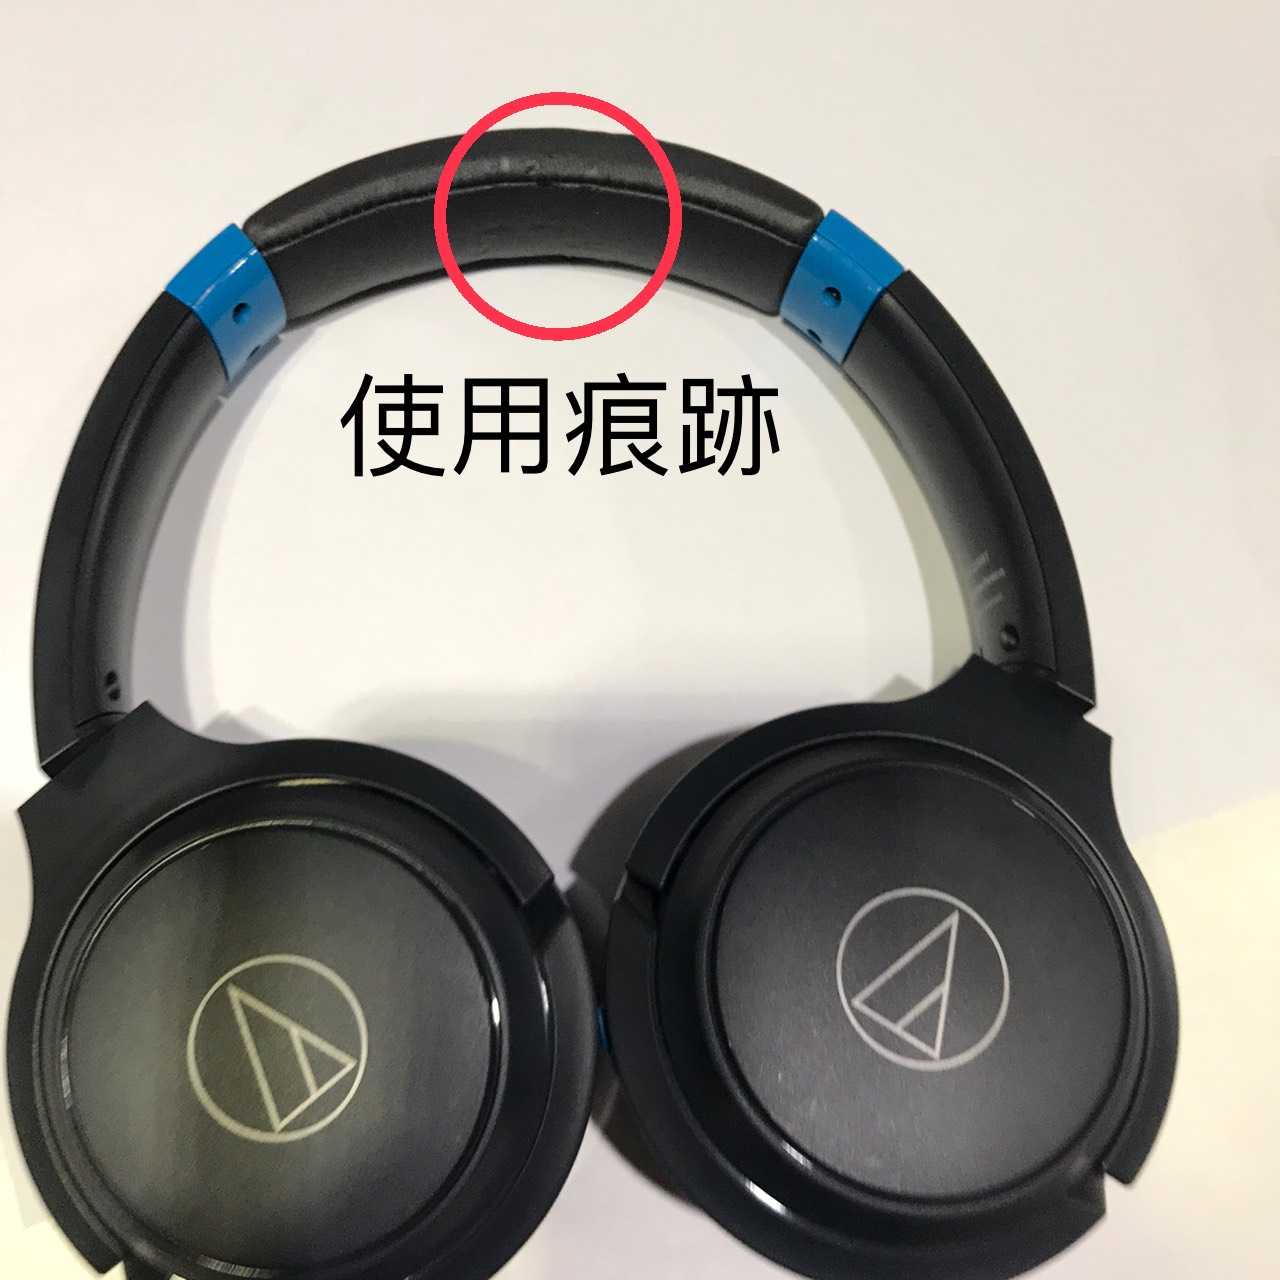 【福利機A組】鐵三角 ATH-S200BT 黑藍色 藍牙耳罩式耳機 藍牙技術 | 金曲音響